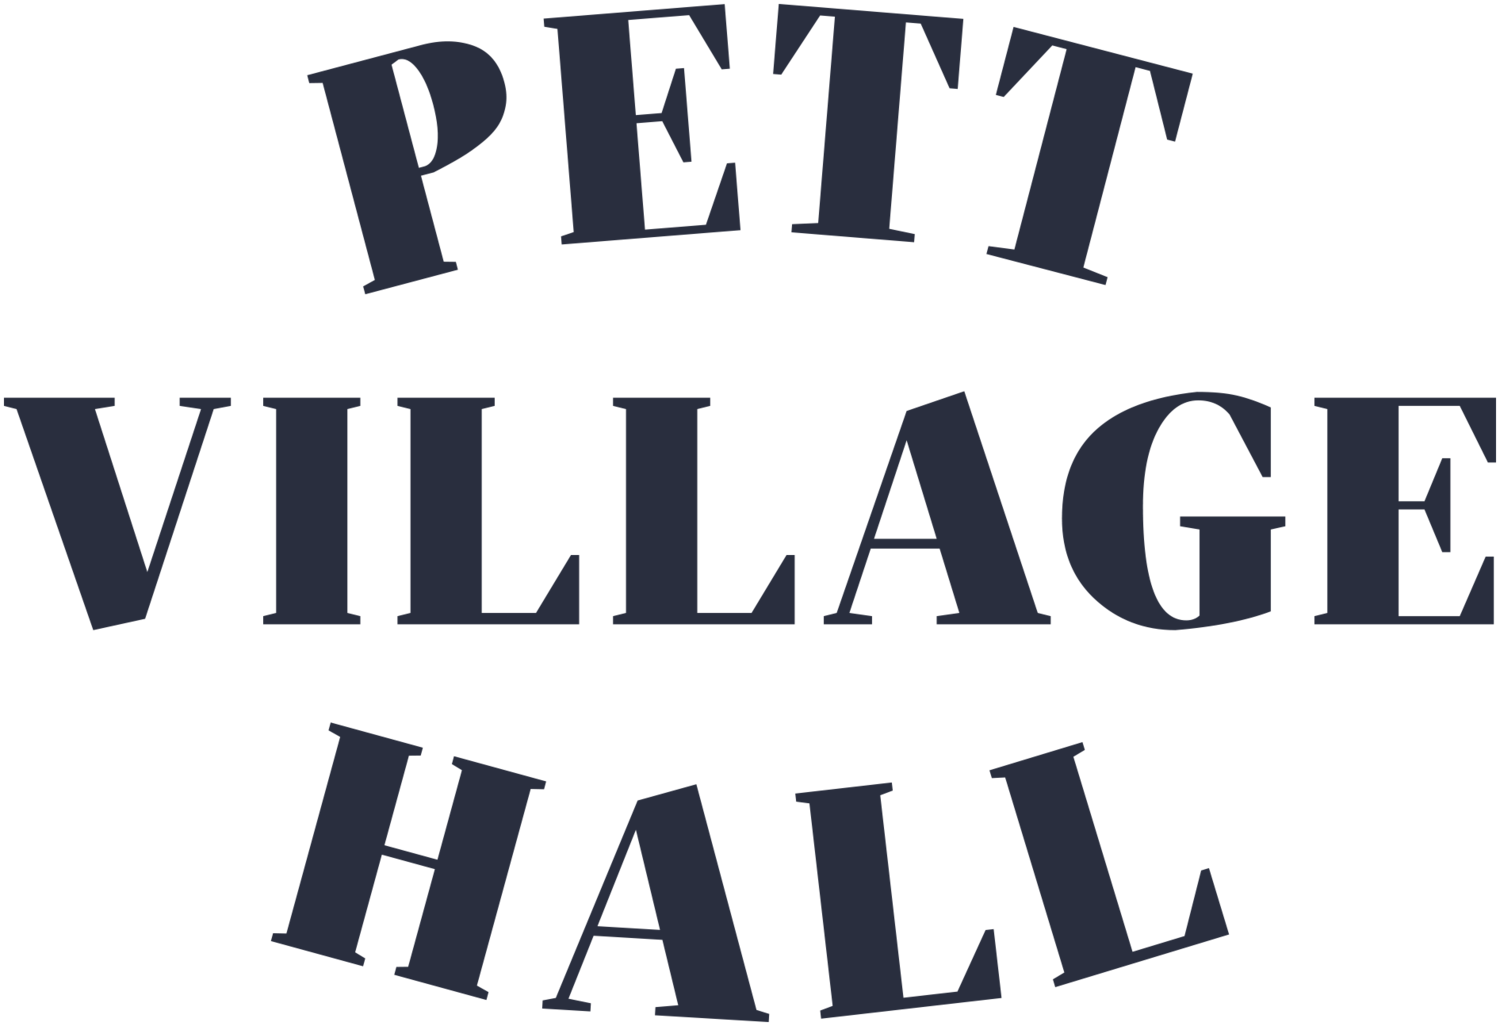 Pett Village Hall